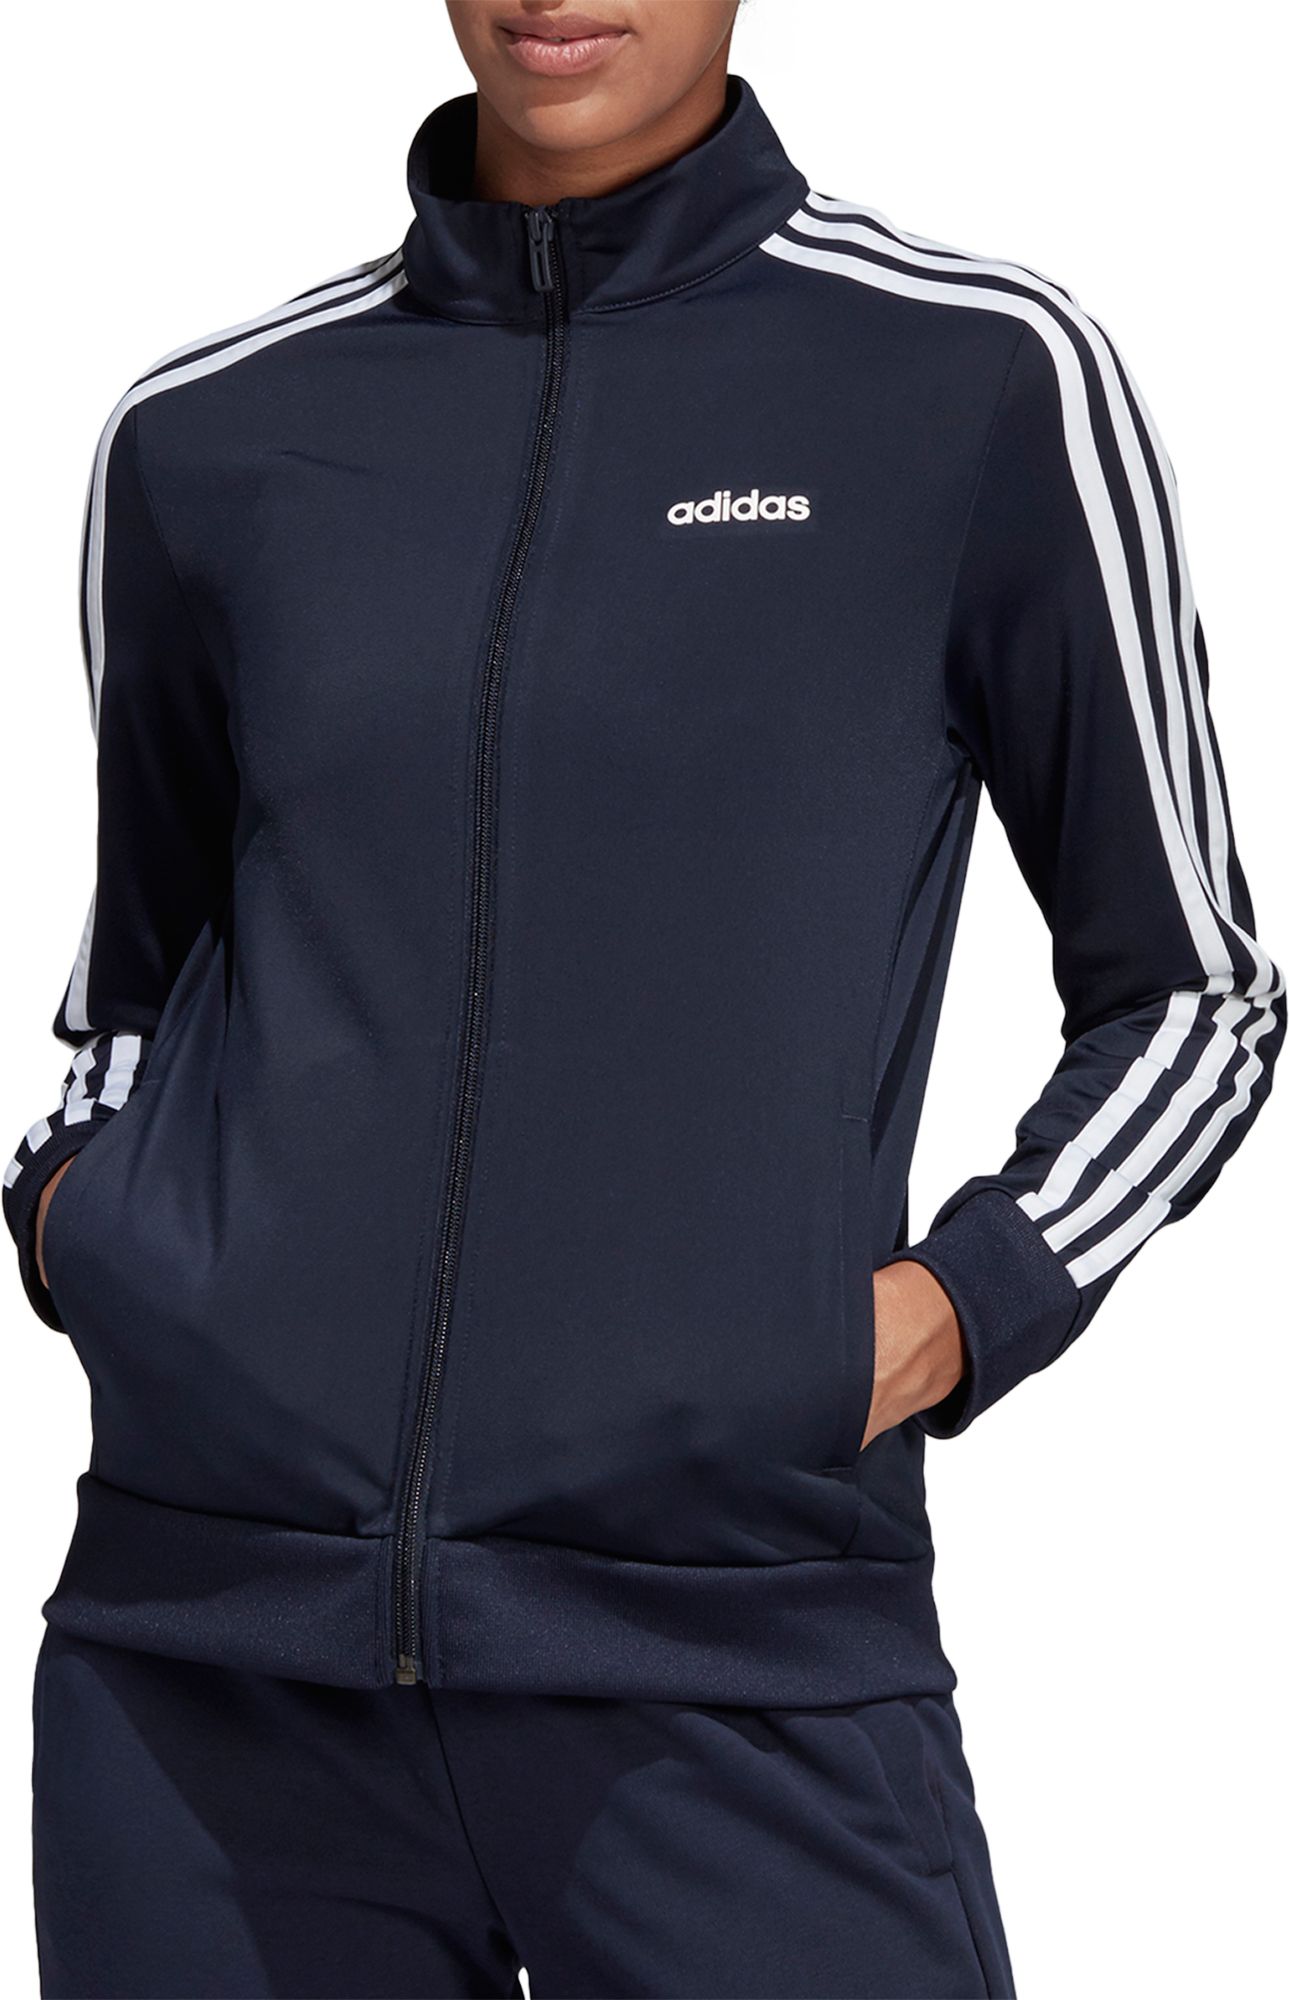 adidas clothing jackets